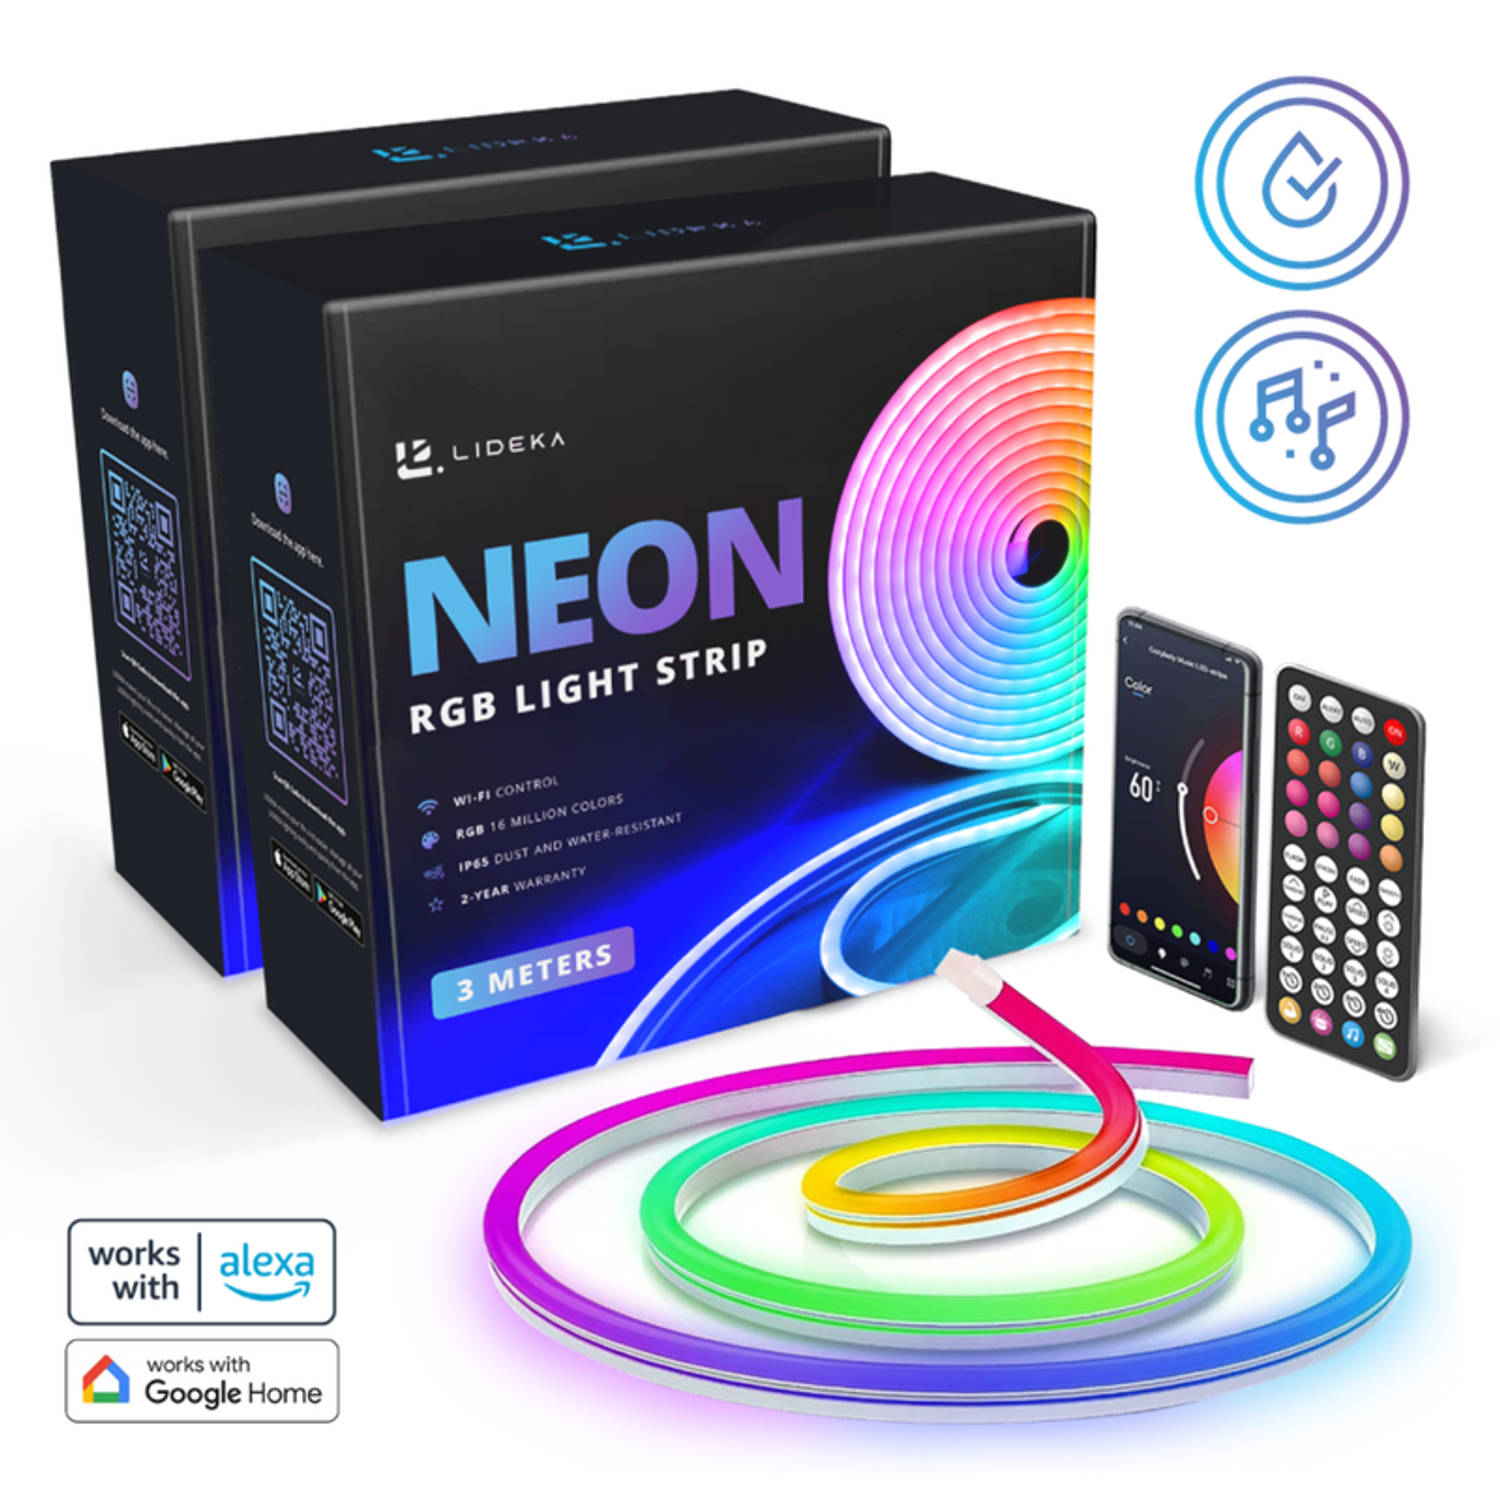 Lideka® Slimme NEON RGB LED strip van 6 meter - 16 miljoen kleurenopties - muziekoptie - uitgebreide top app - IP68 bescherming - compatibel met Google en Alexa - Moederdag cadeaut